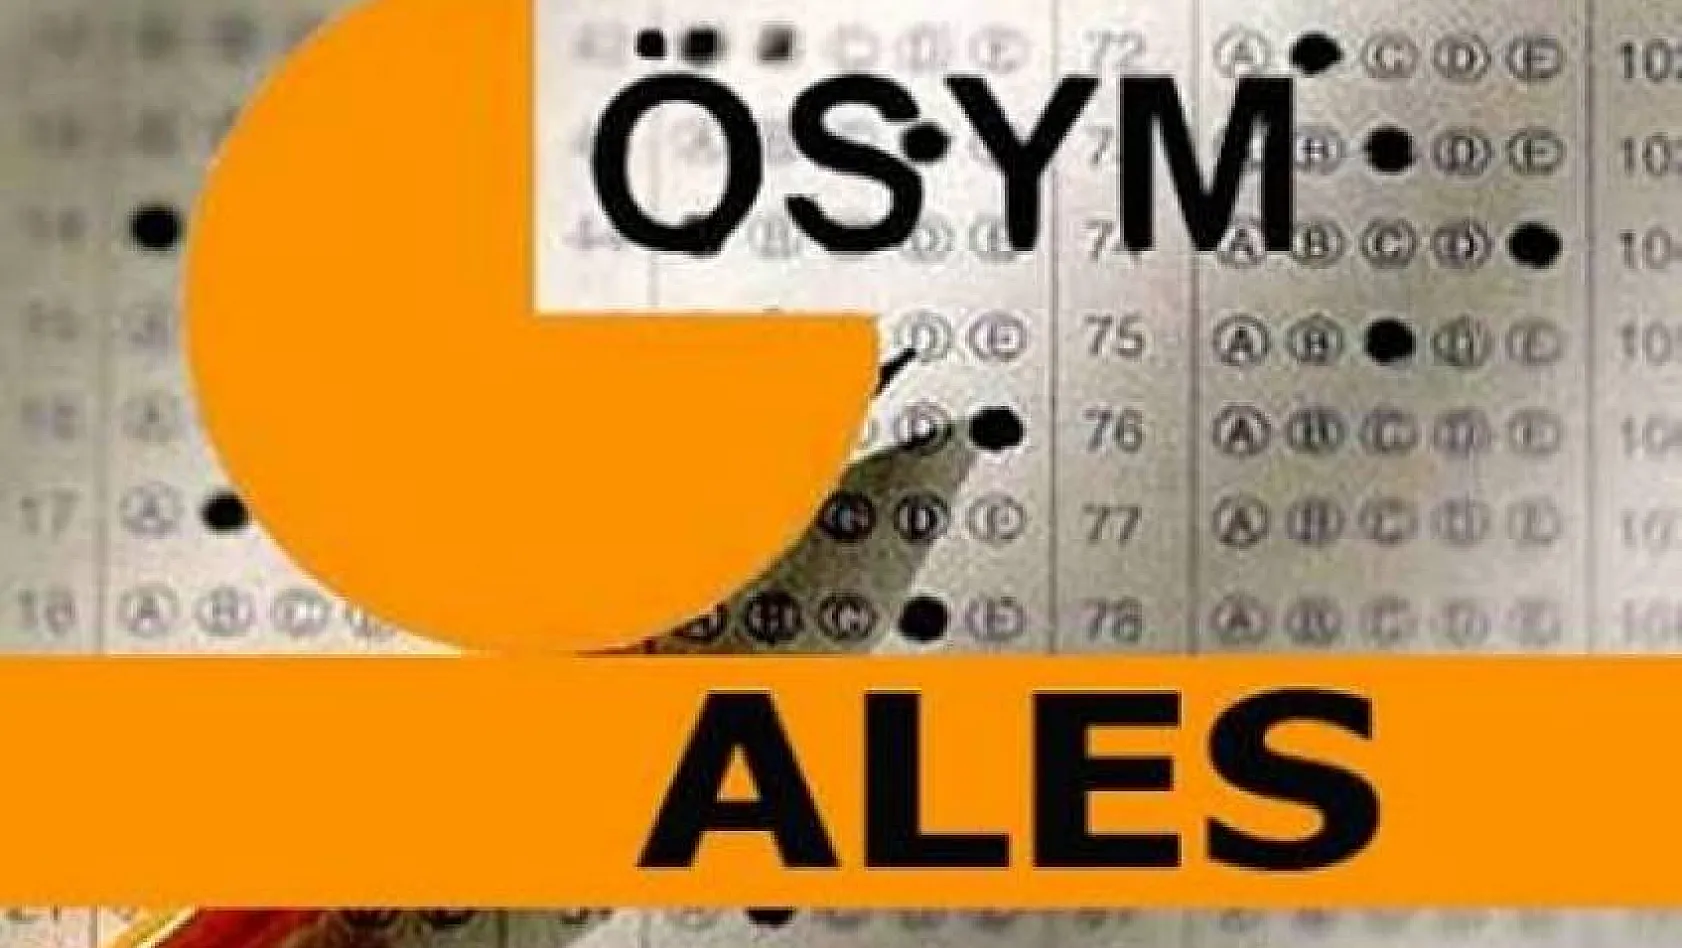 ÖSYM'den ALES adaylarına 09.45 uyarısı